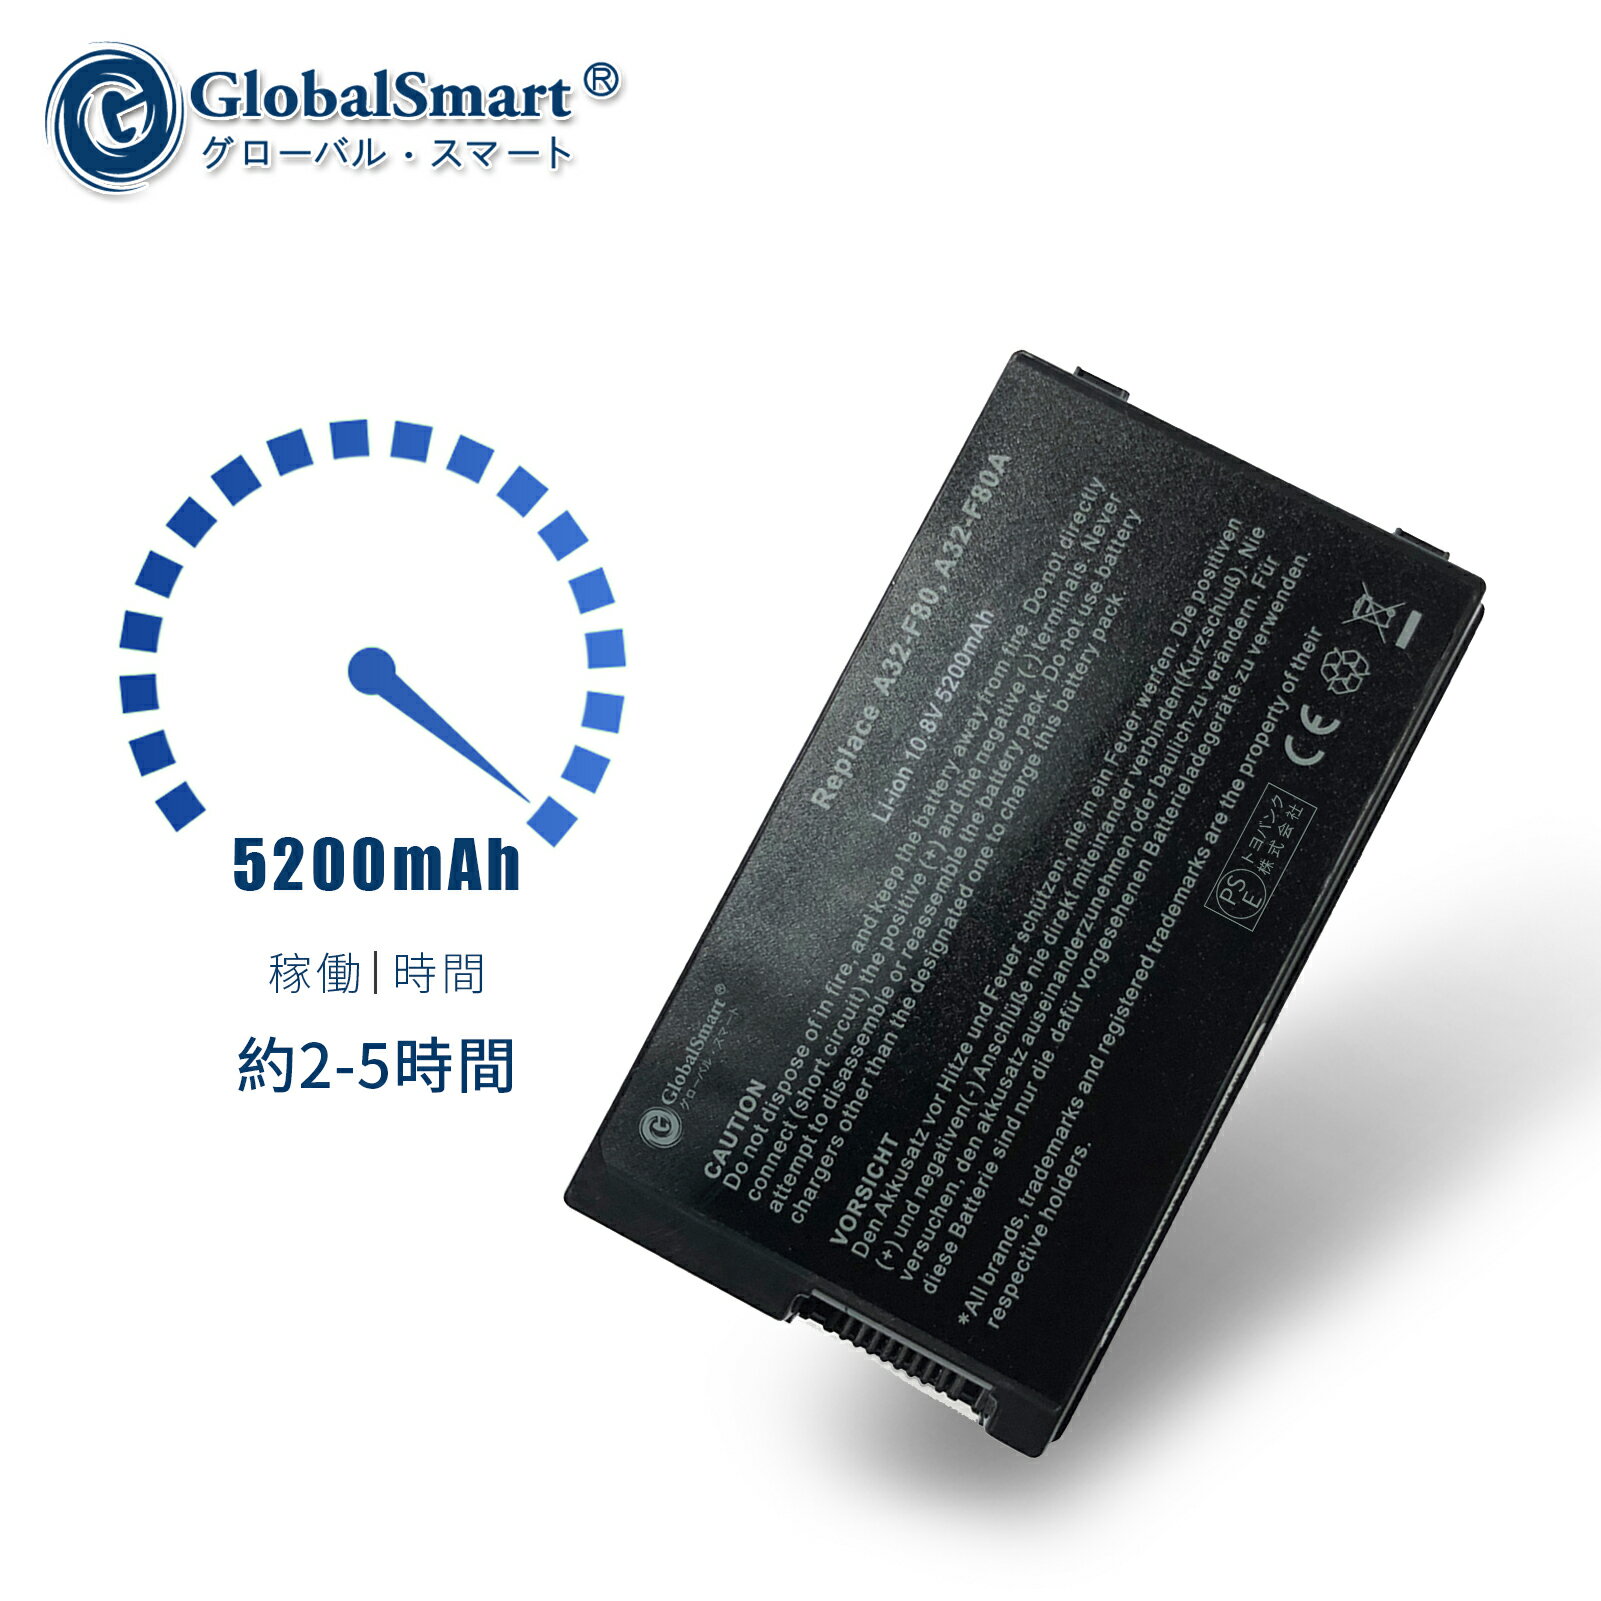 Globalsmart 新品 ASUS X88 大容量互換バッテリパック【5200mAh 10.8V】対応用 1年保証 高性能 PSE認証 互換バッテリー 2